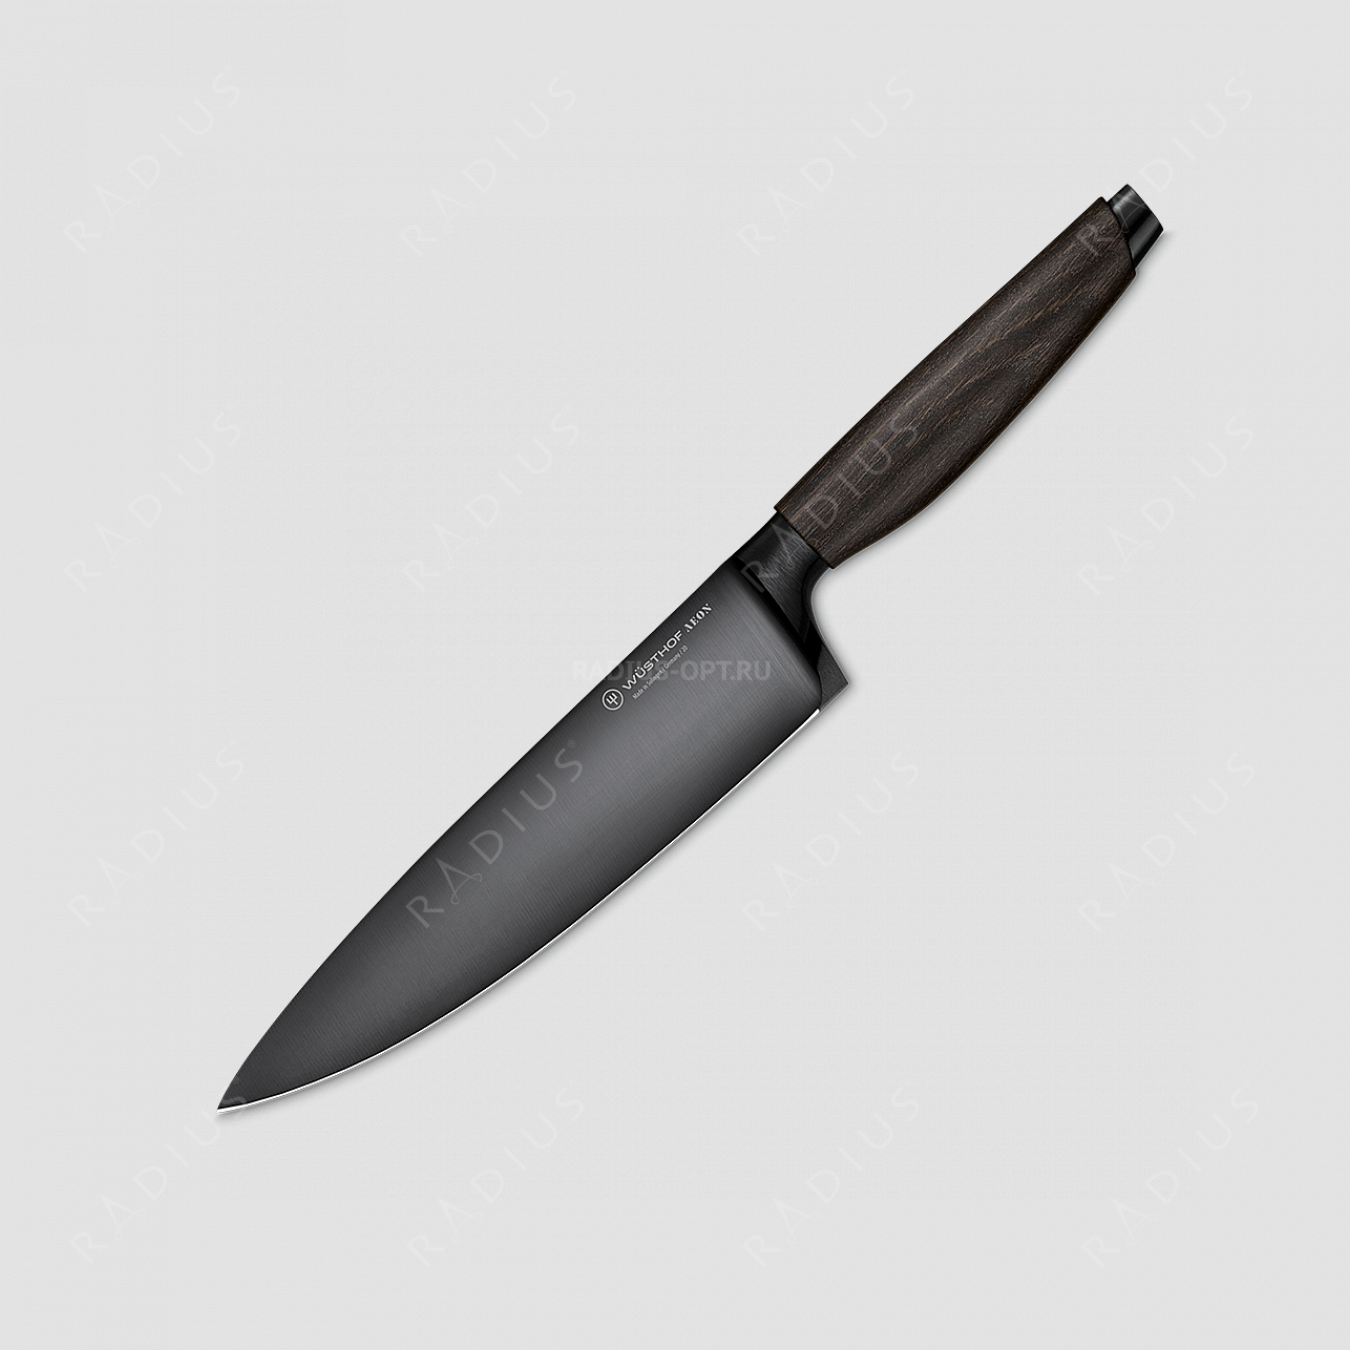 Эксклюзивный поварской кухонный нож 20 см, лимитированная серия Aeon, WUESTHOF, Золинген, Германия